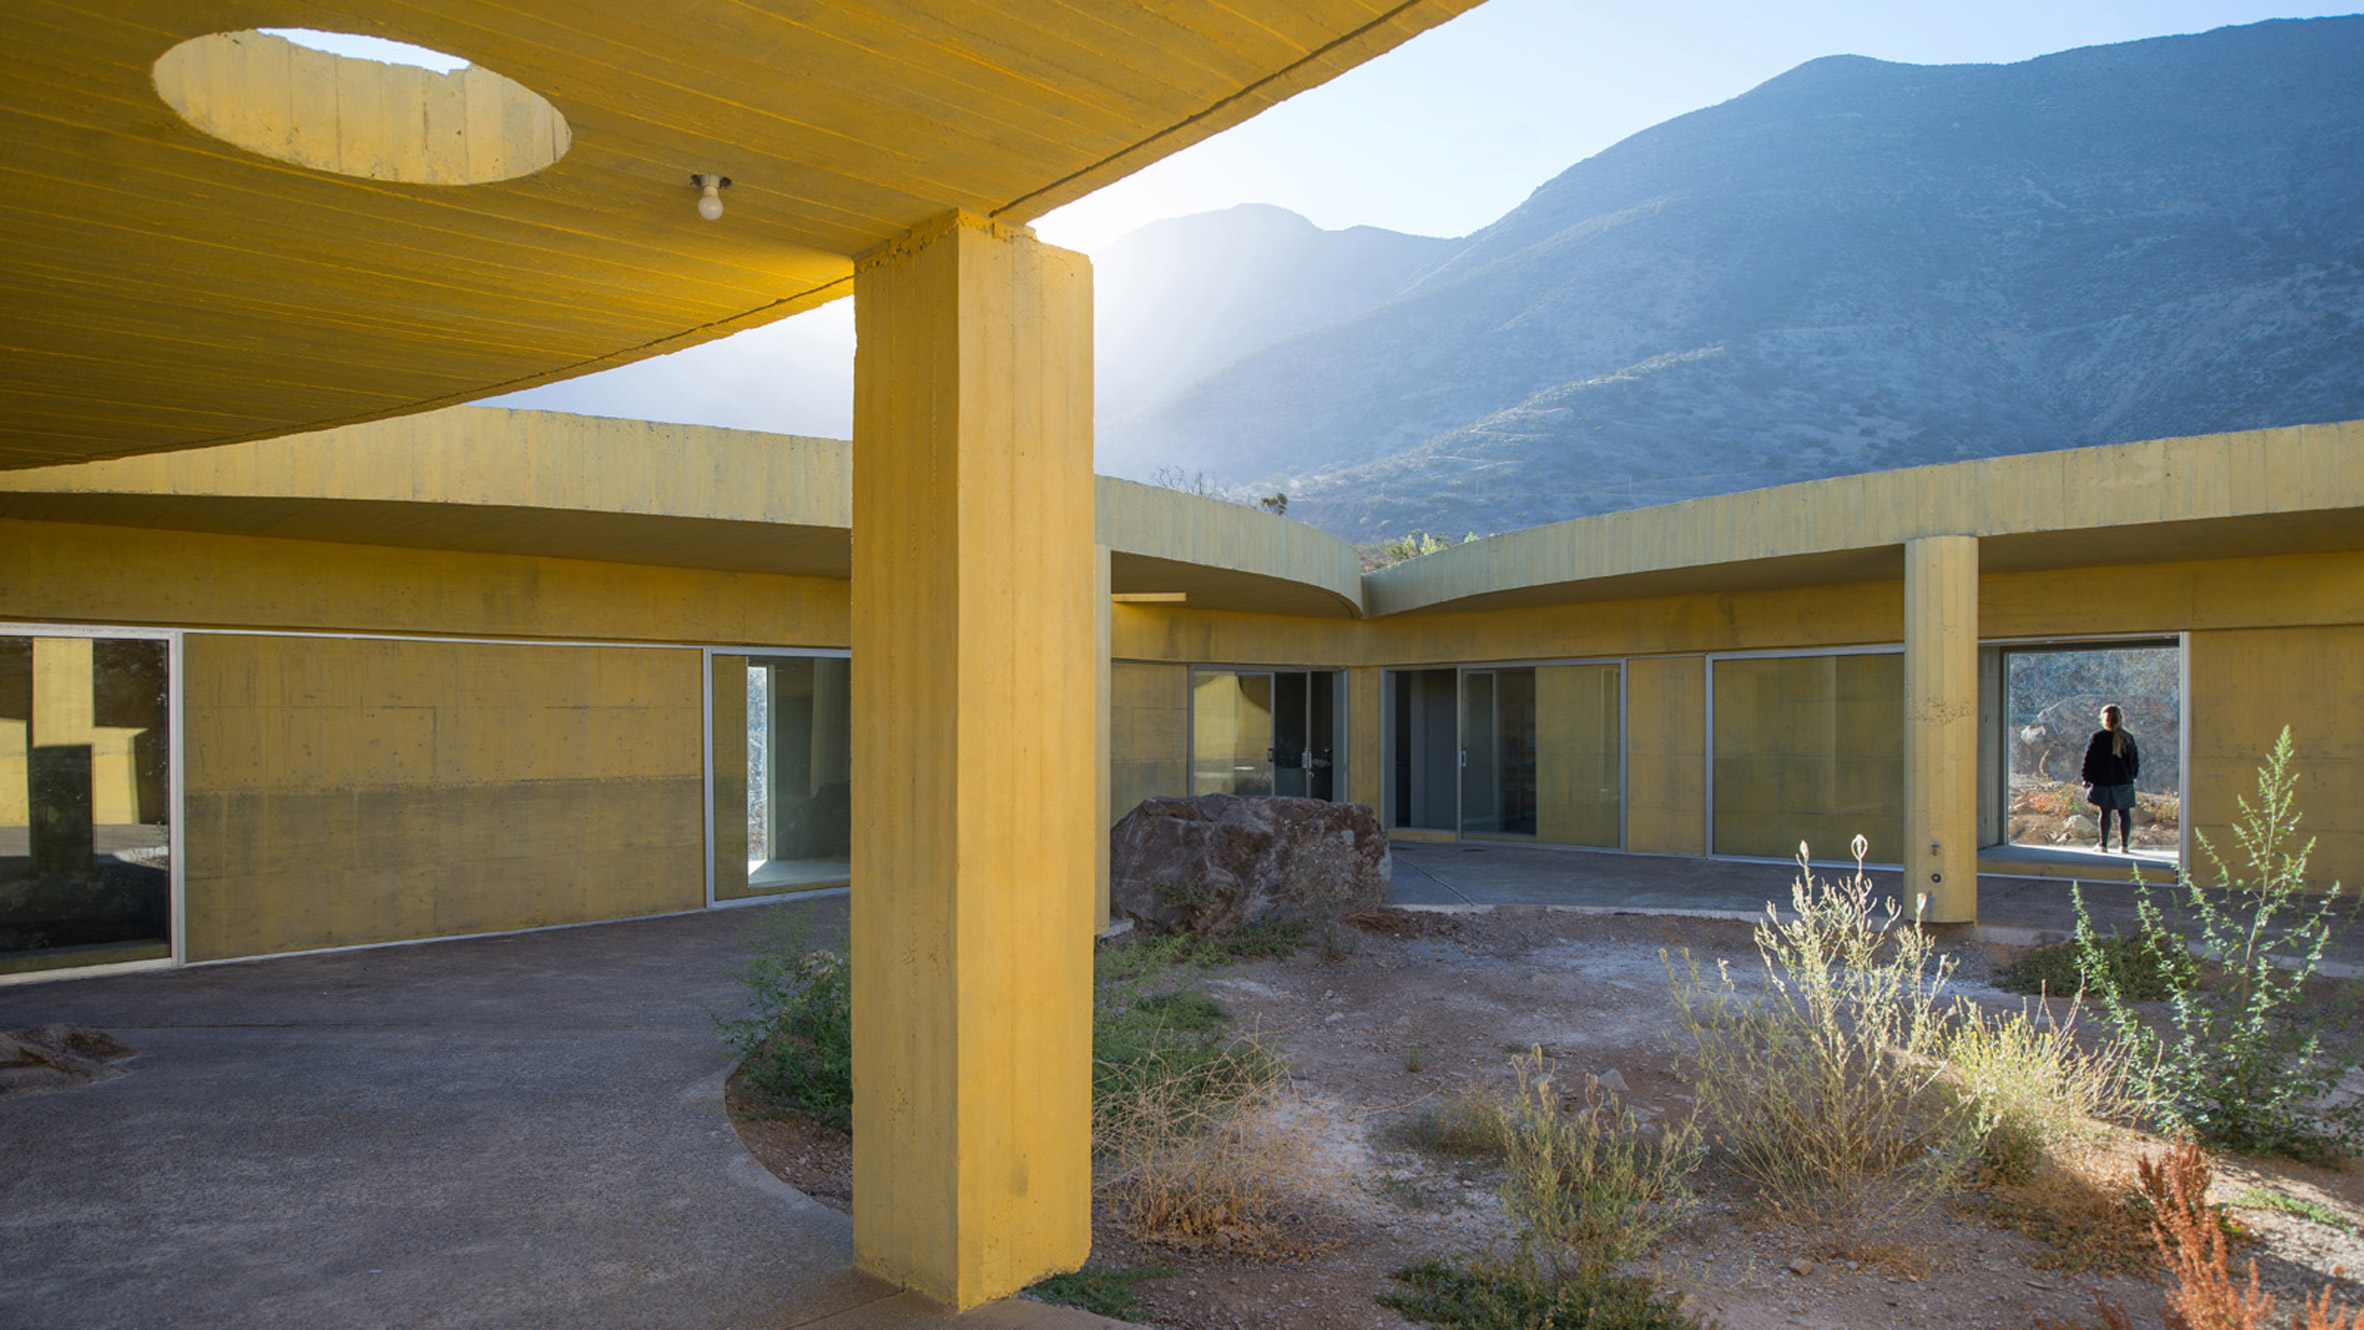 Pezo von Ellrichshausen opts for yellow concrete at Raem House